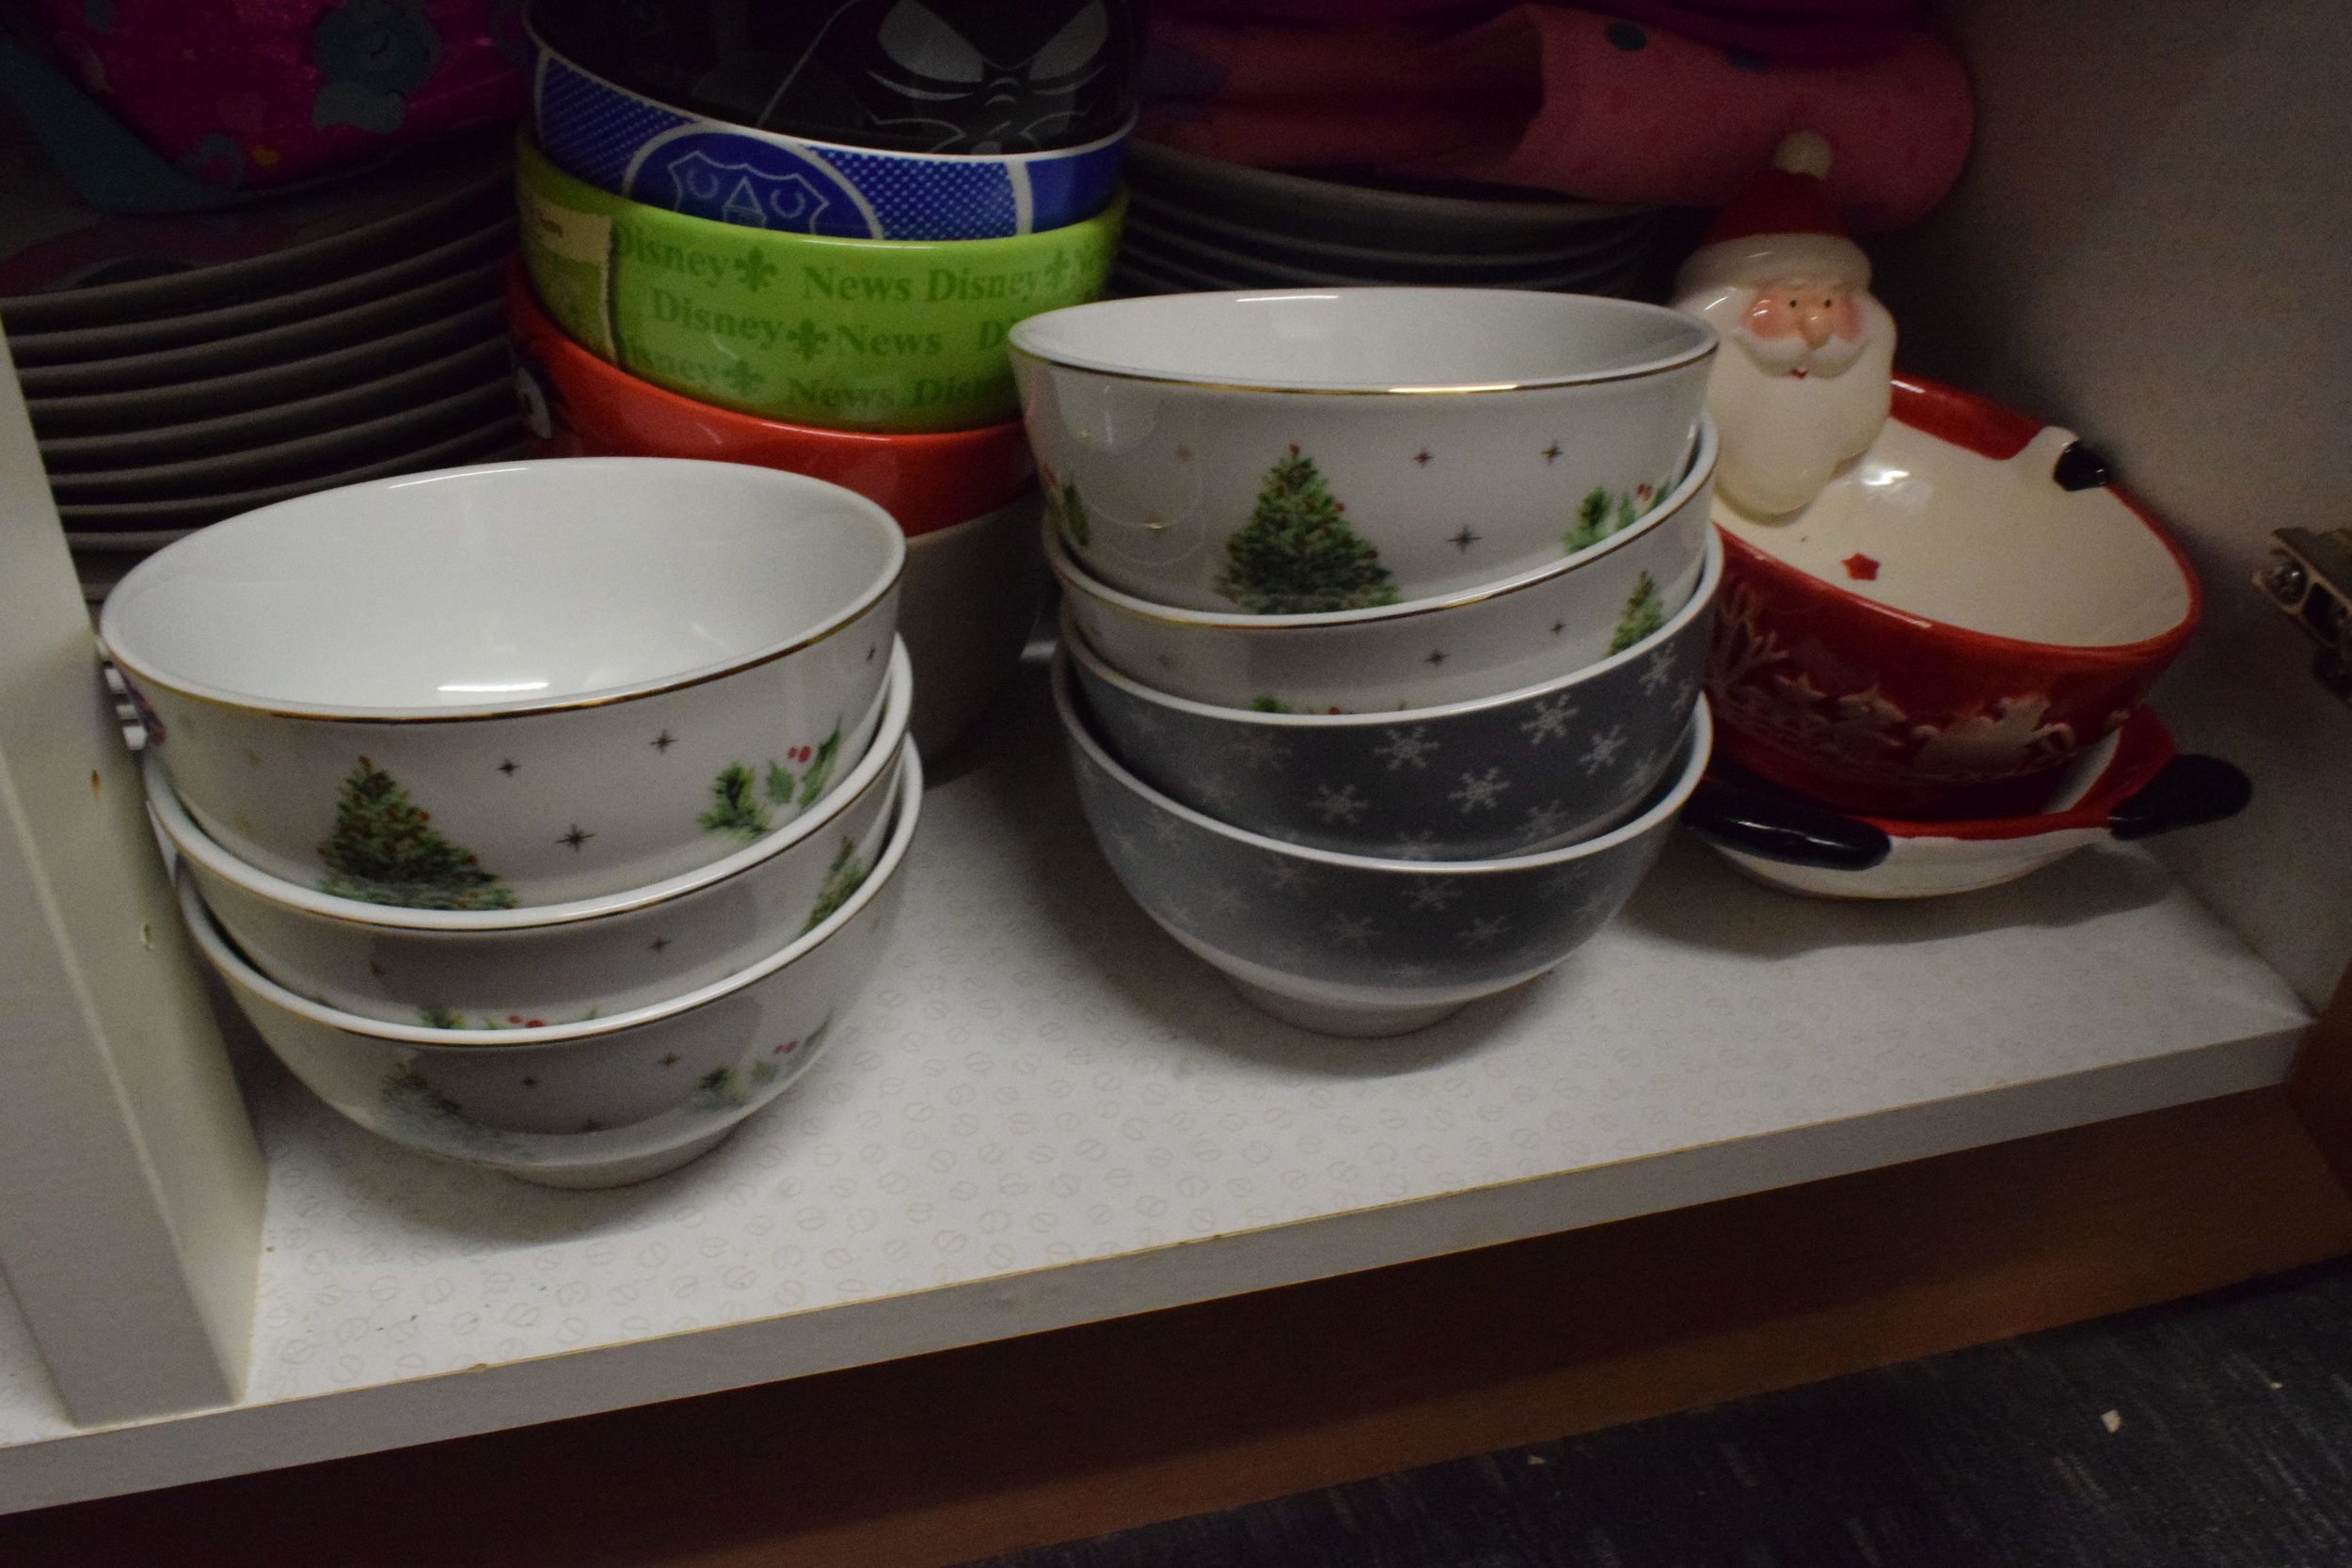 Christmas bowls